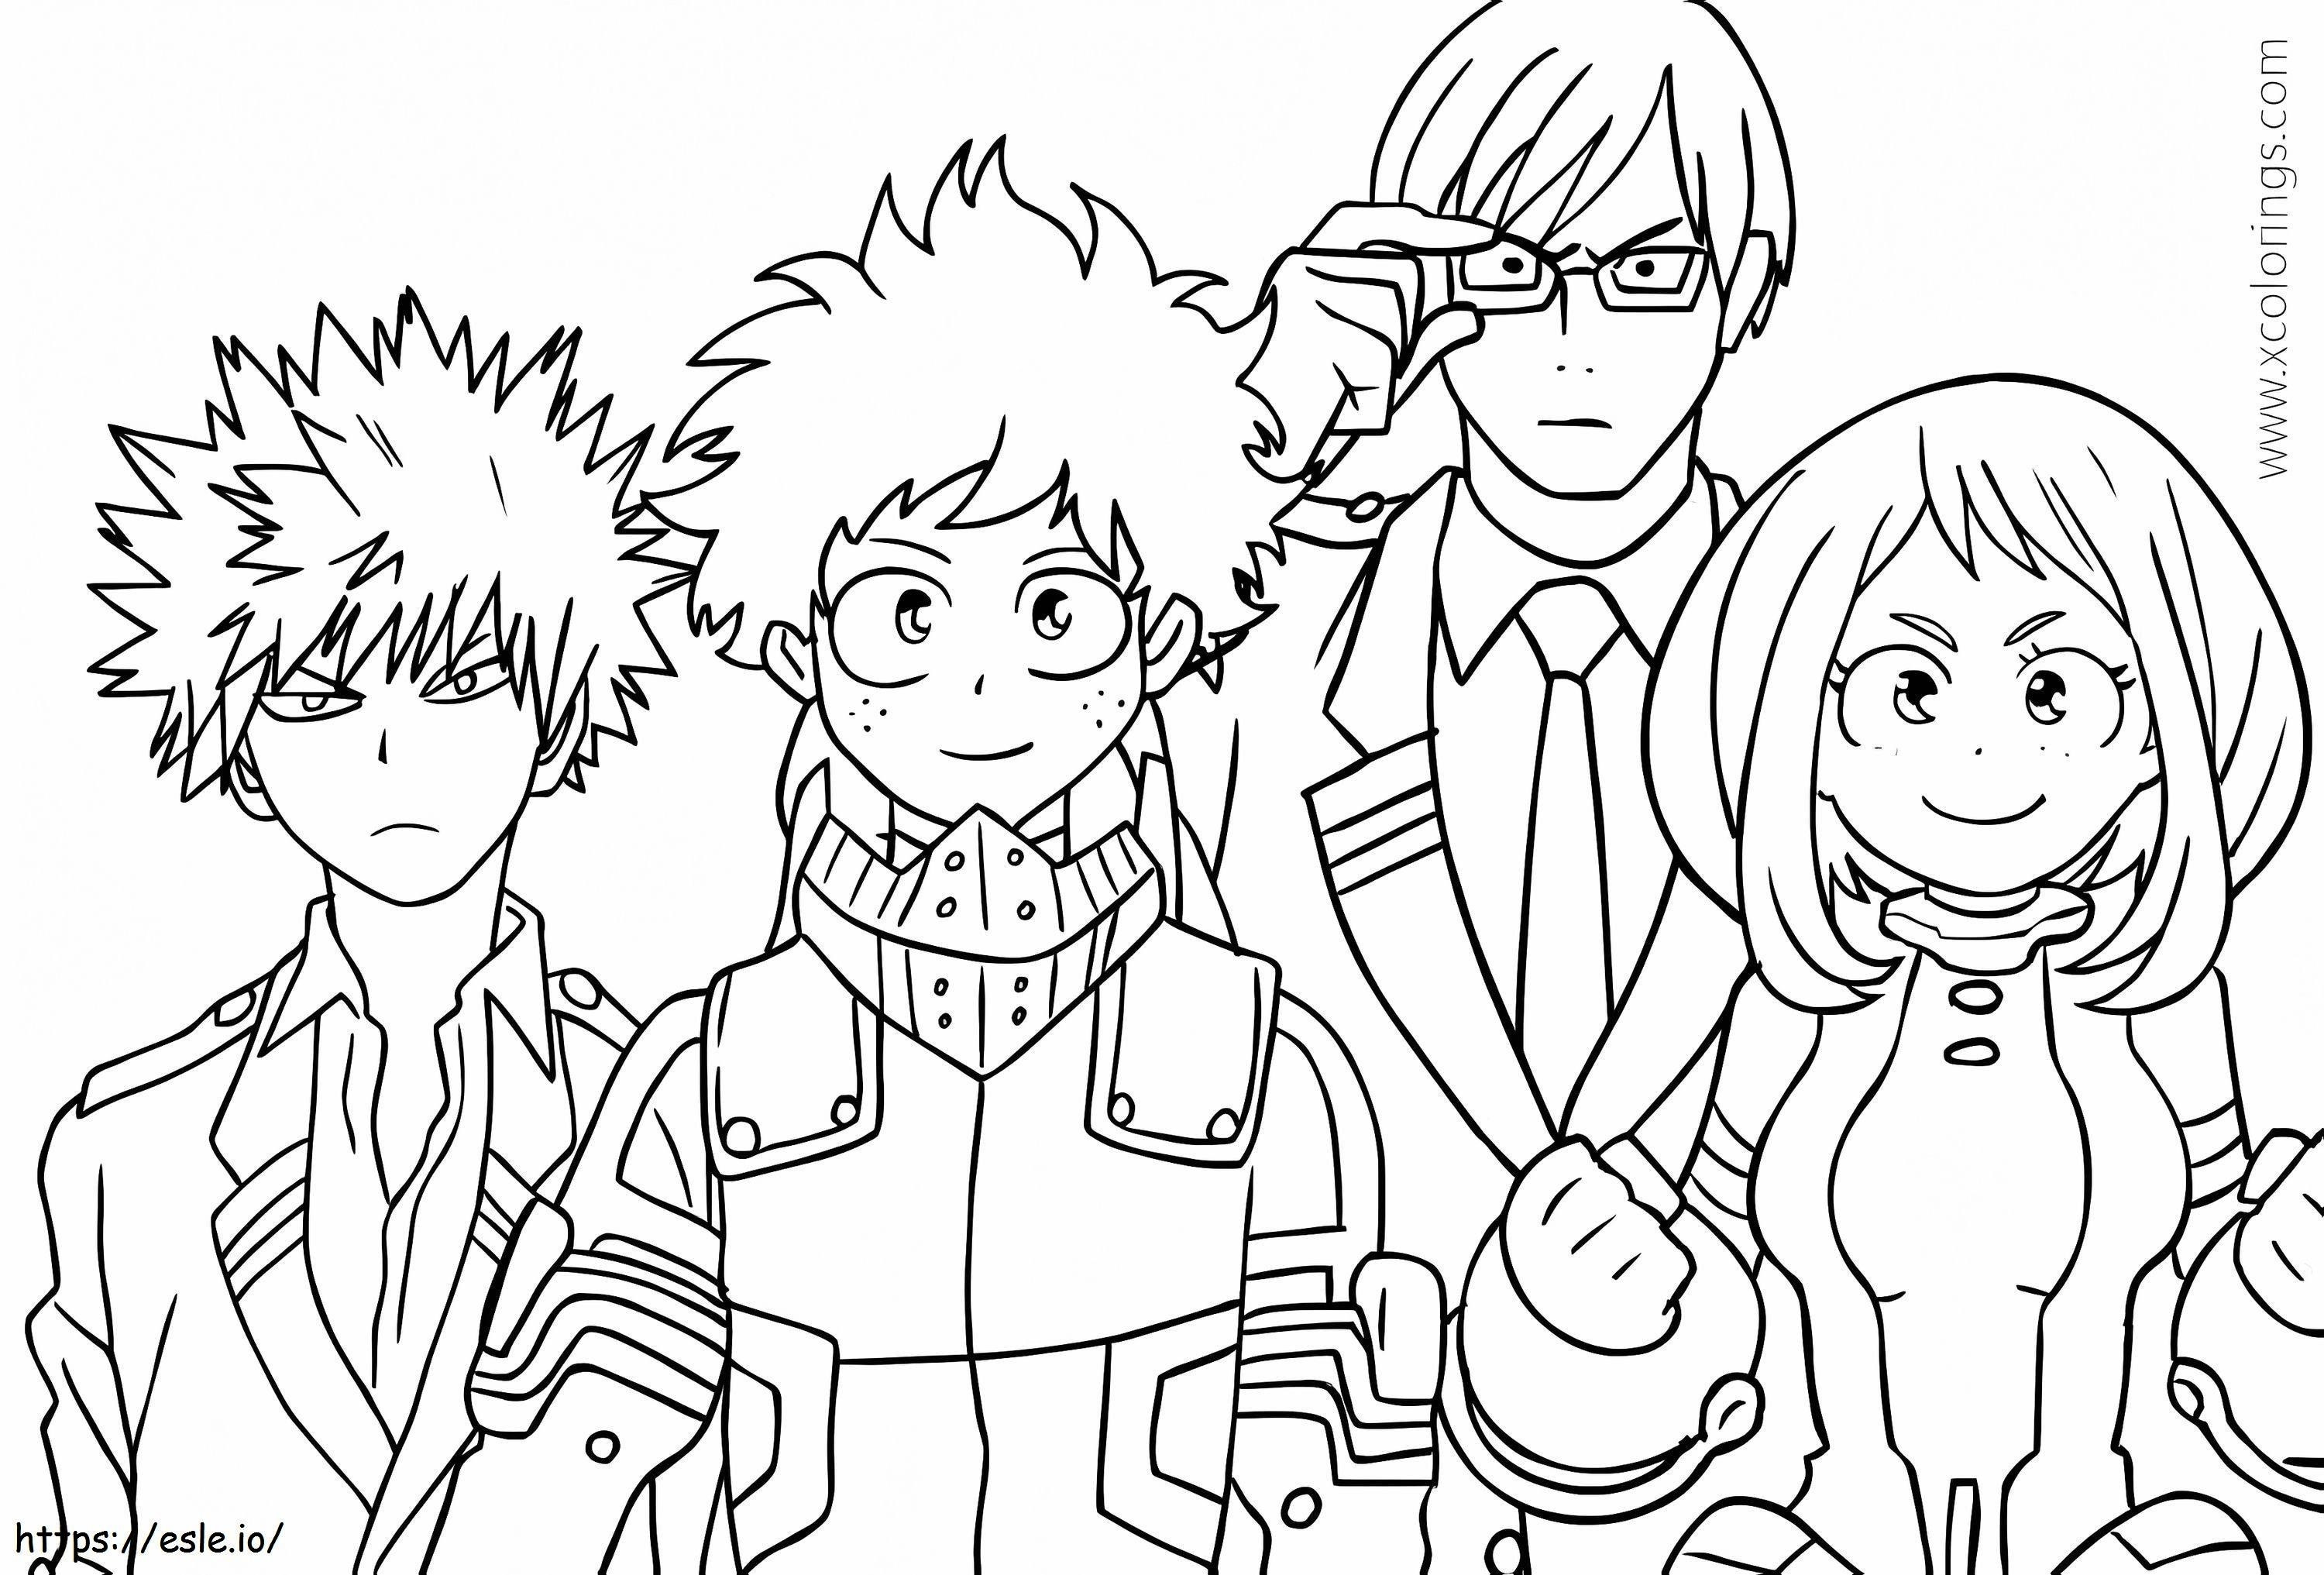 Midoriya'S Friends coloring page